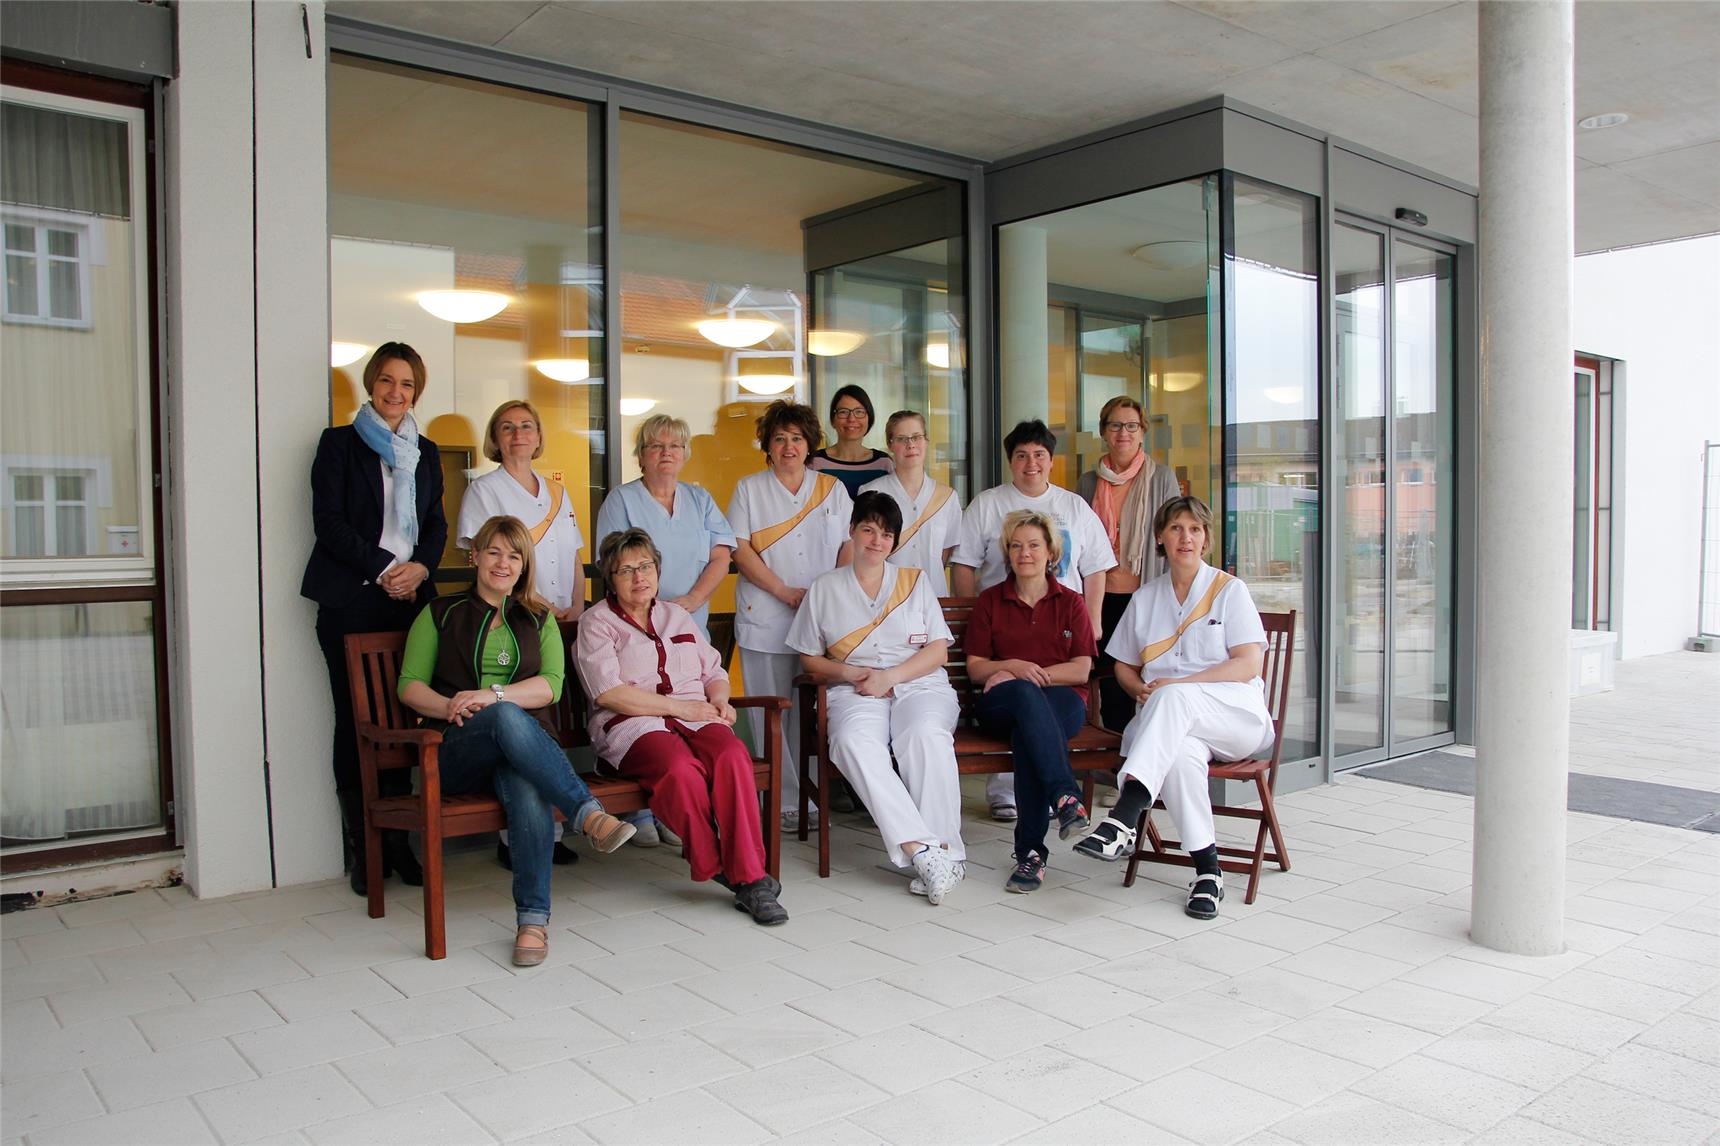 Insgesamt 70 MitarbeiterInnnen zählt das Team des Caritas-Pflegezentrums St. Hildegard in Pöttmes. Sie sind sehr froh darüber, in diesem neuen modernen Gebäude mitarbeiten zu können. (Bernhard Gattner)